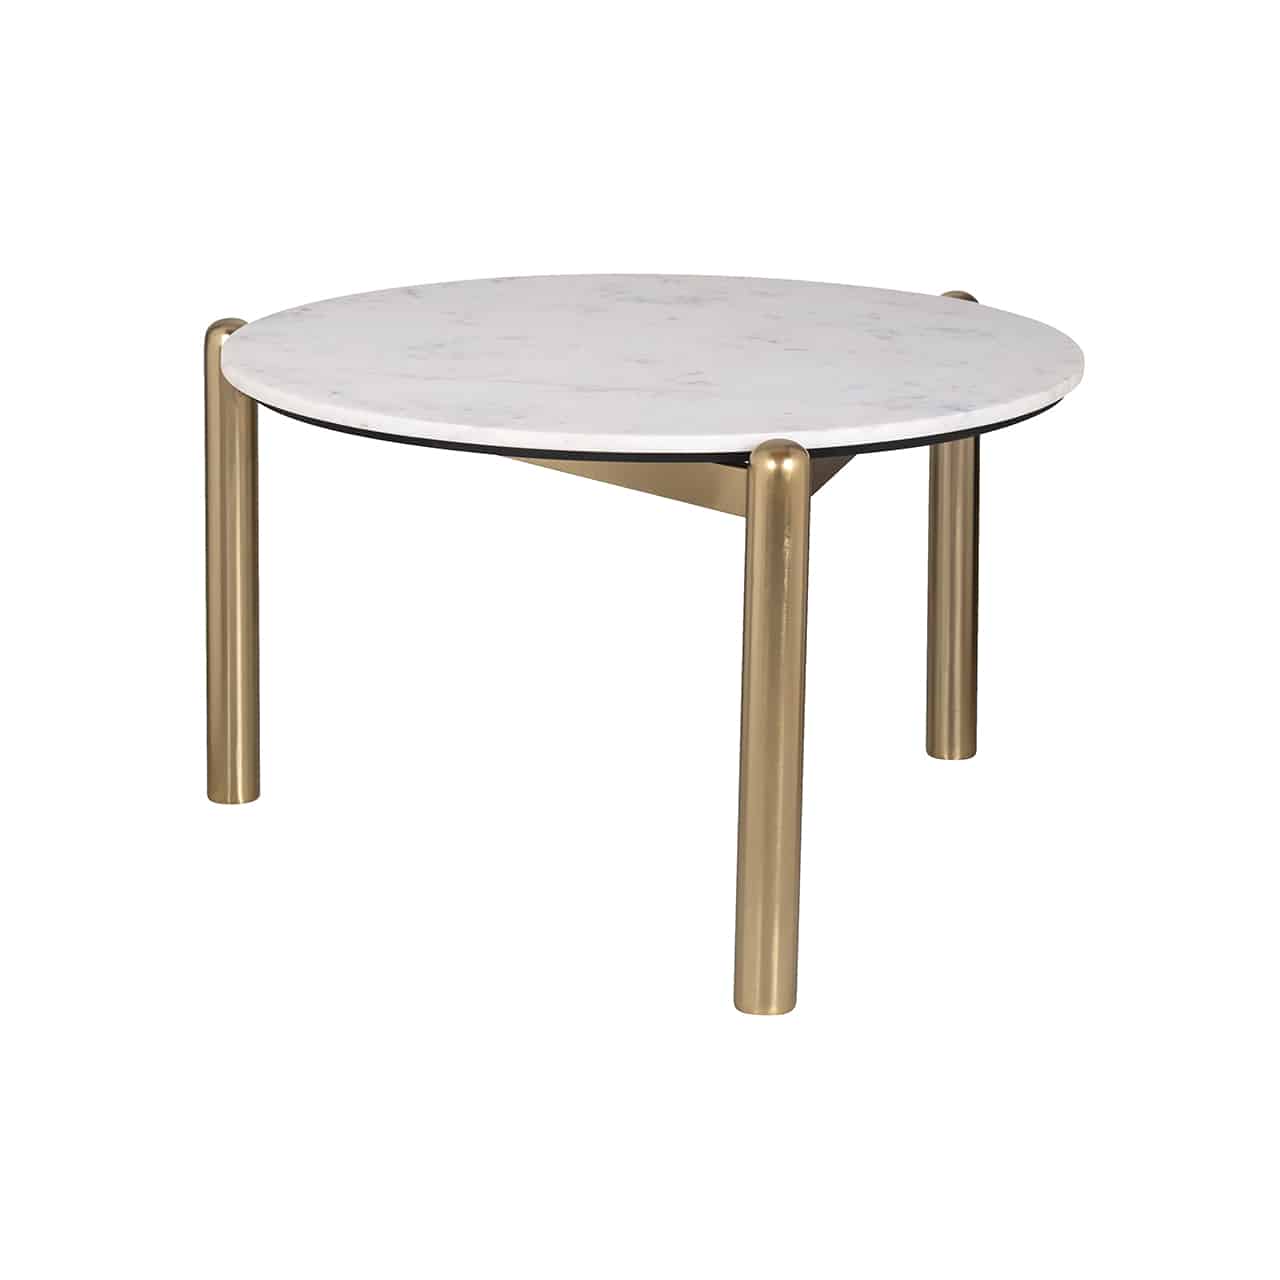 Couchtisch bestehend aus einem Gestell aus goldenem Metall mit drei kompakten runden Beinen mit gewölbten Abschluss; darauf eine Tischplatte aus weißem Marmor.